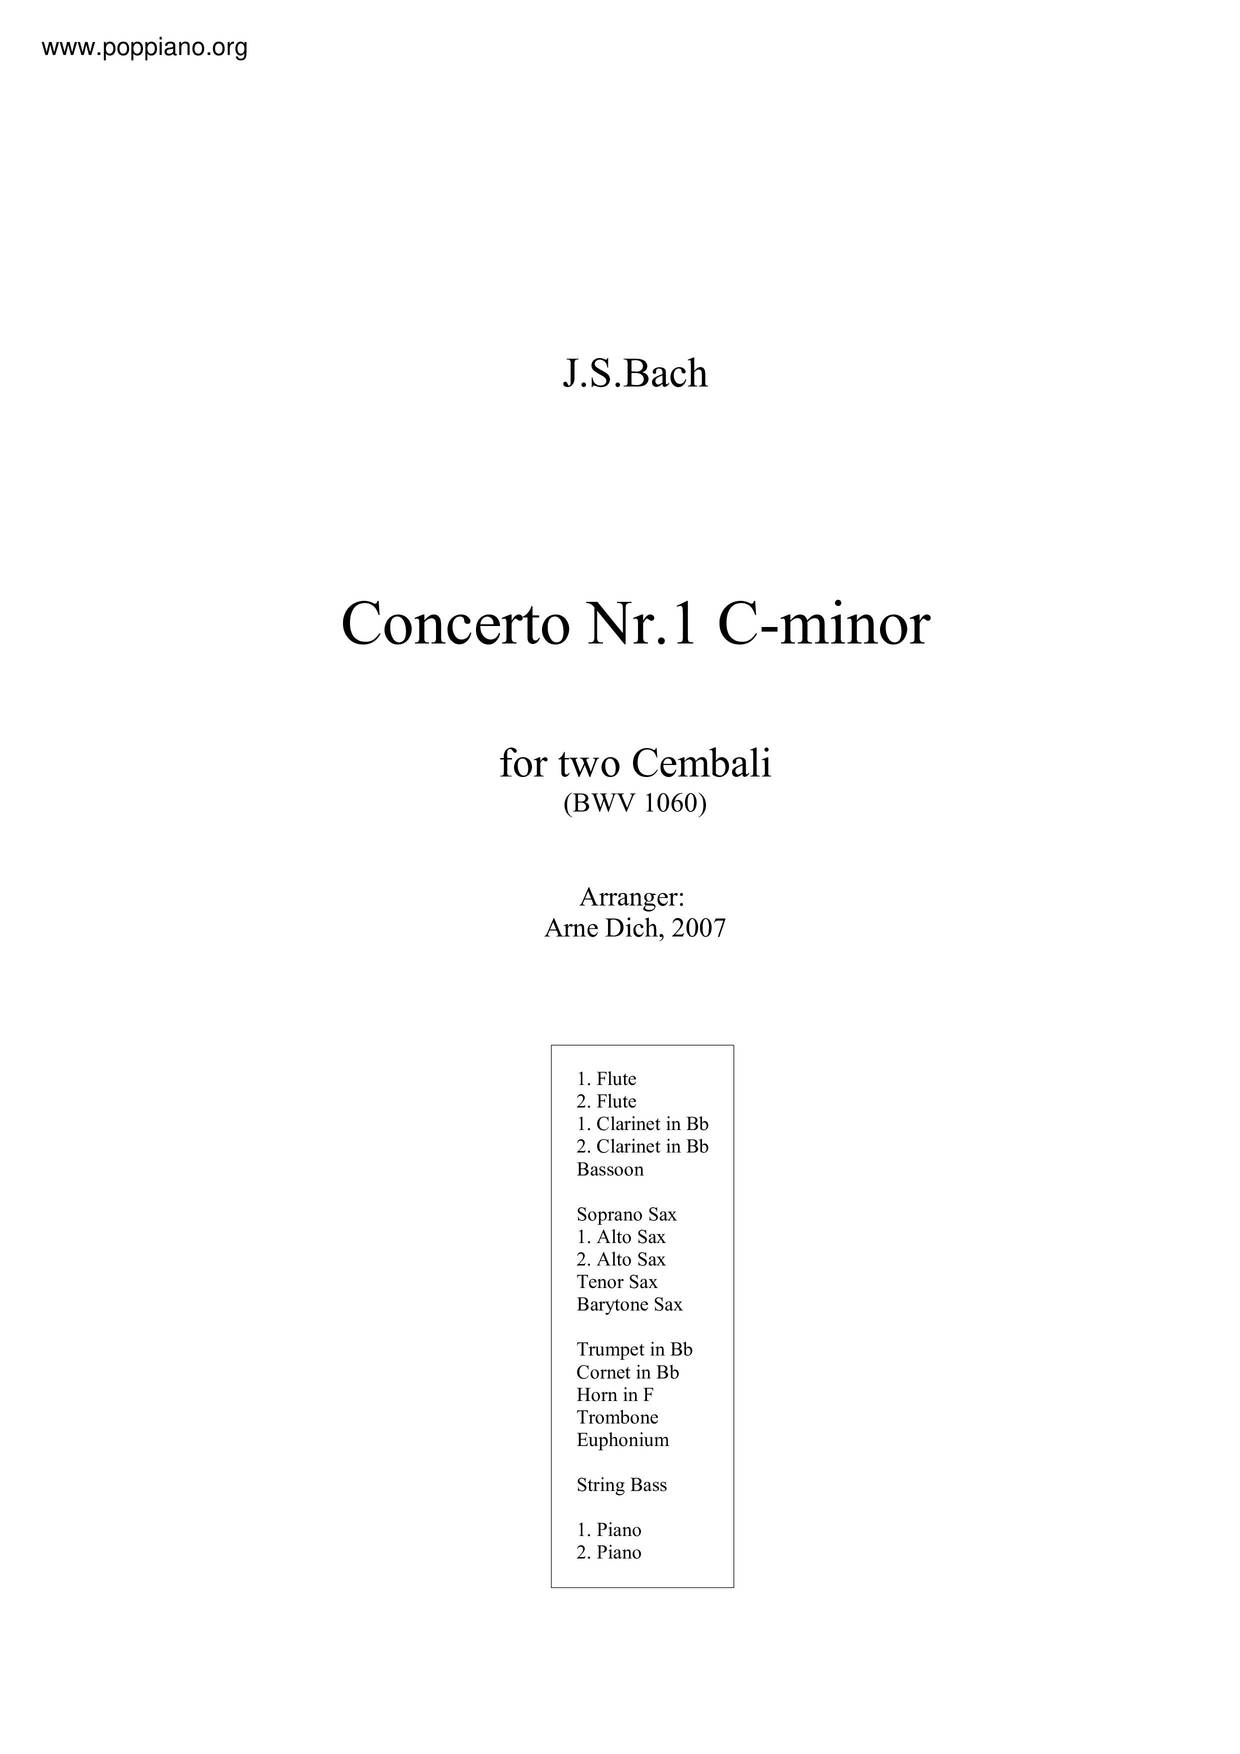 Concerto For 2 Harpsichords In C Minor, BWV 1060琴谱